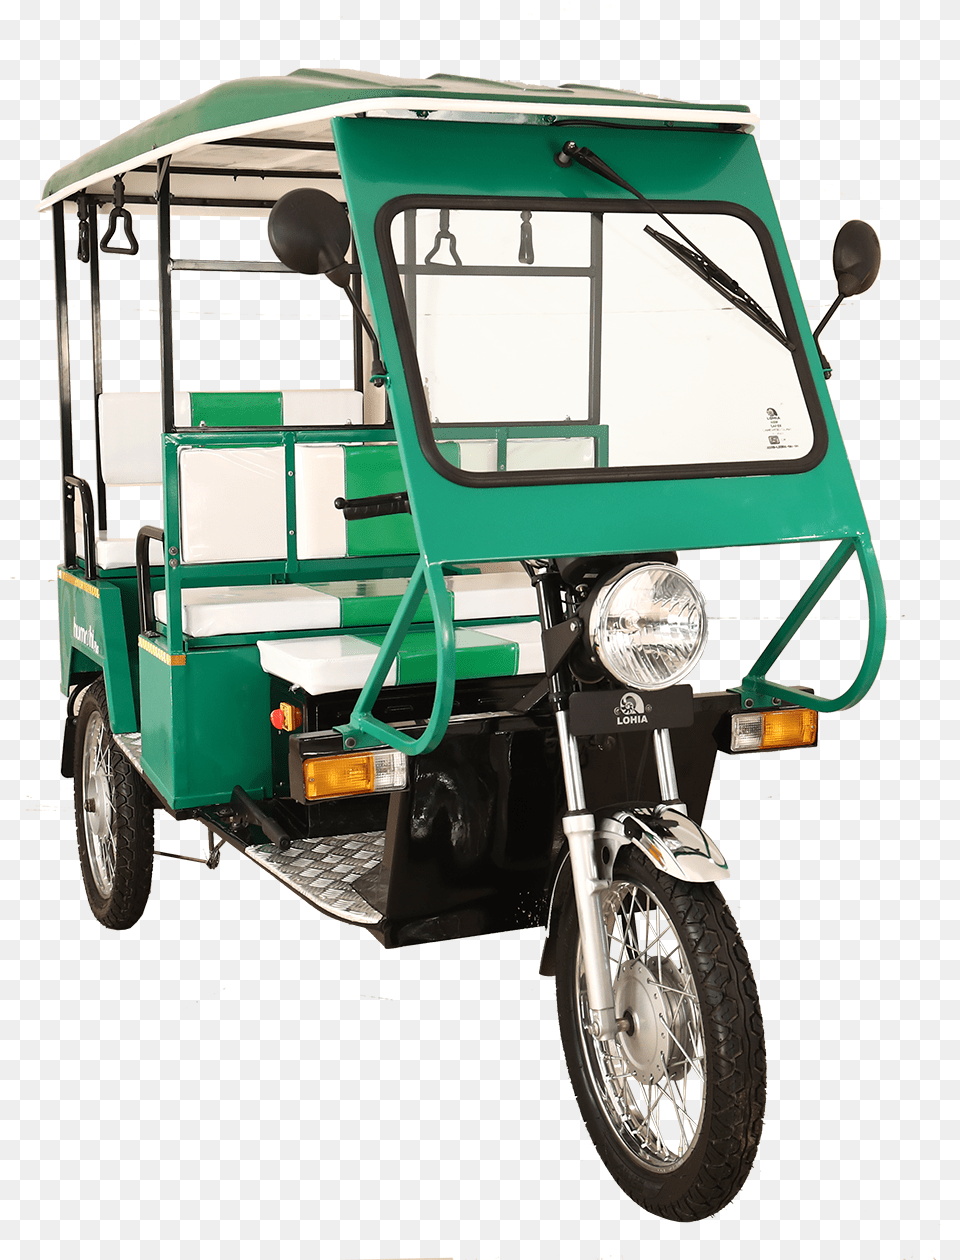 Electric Rickshaw, Machine, Wheel, Transportation, Vehicle Png Image